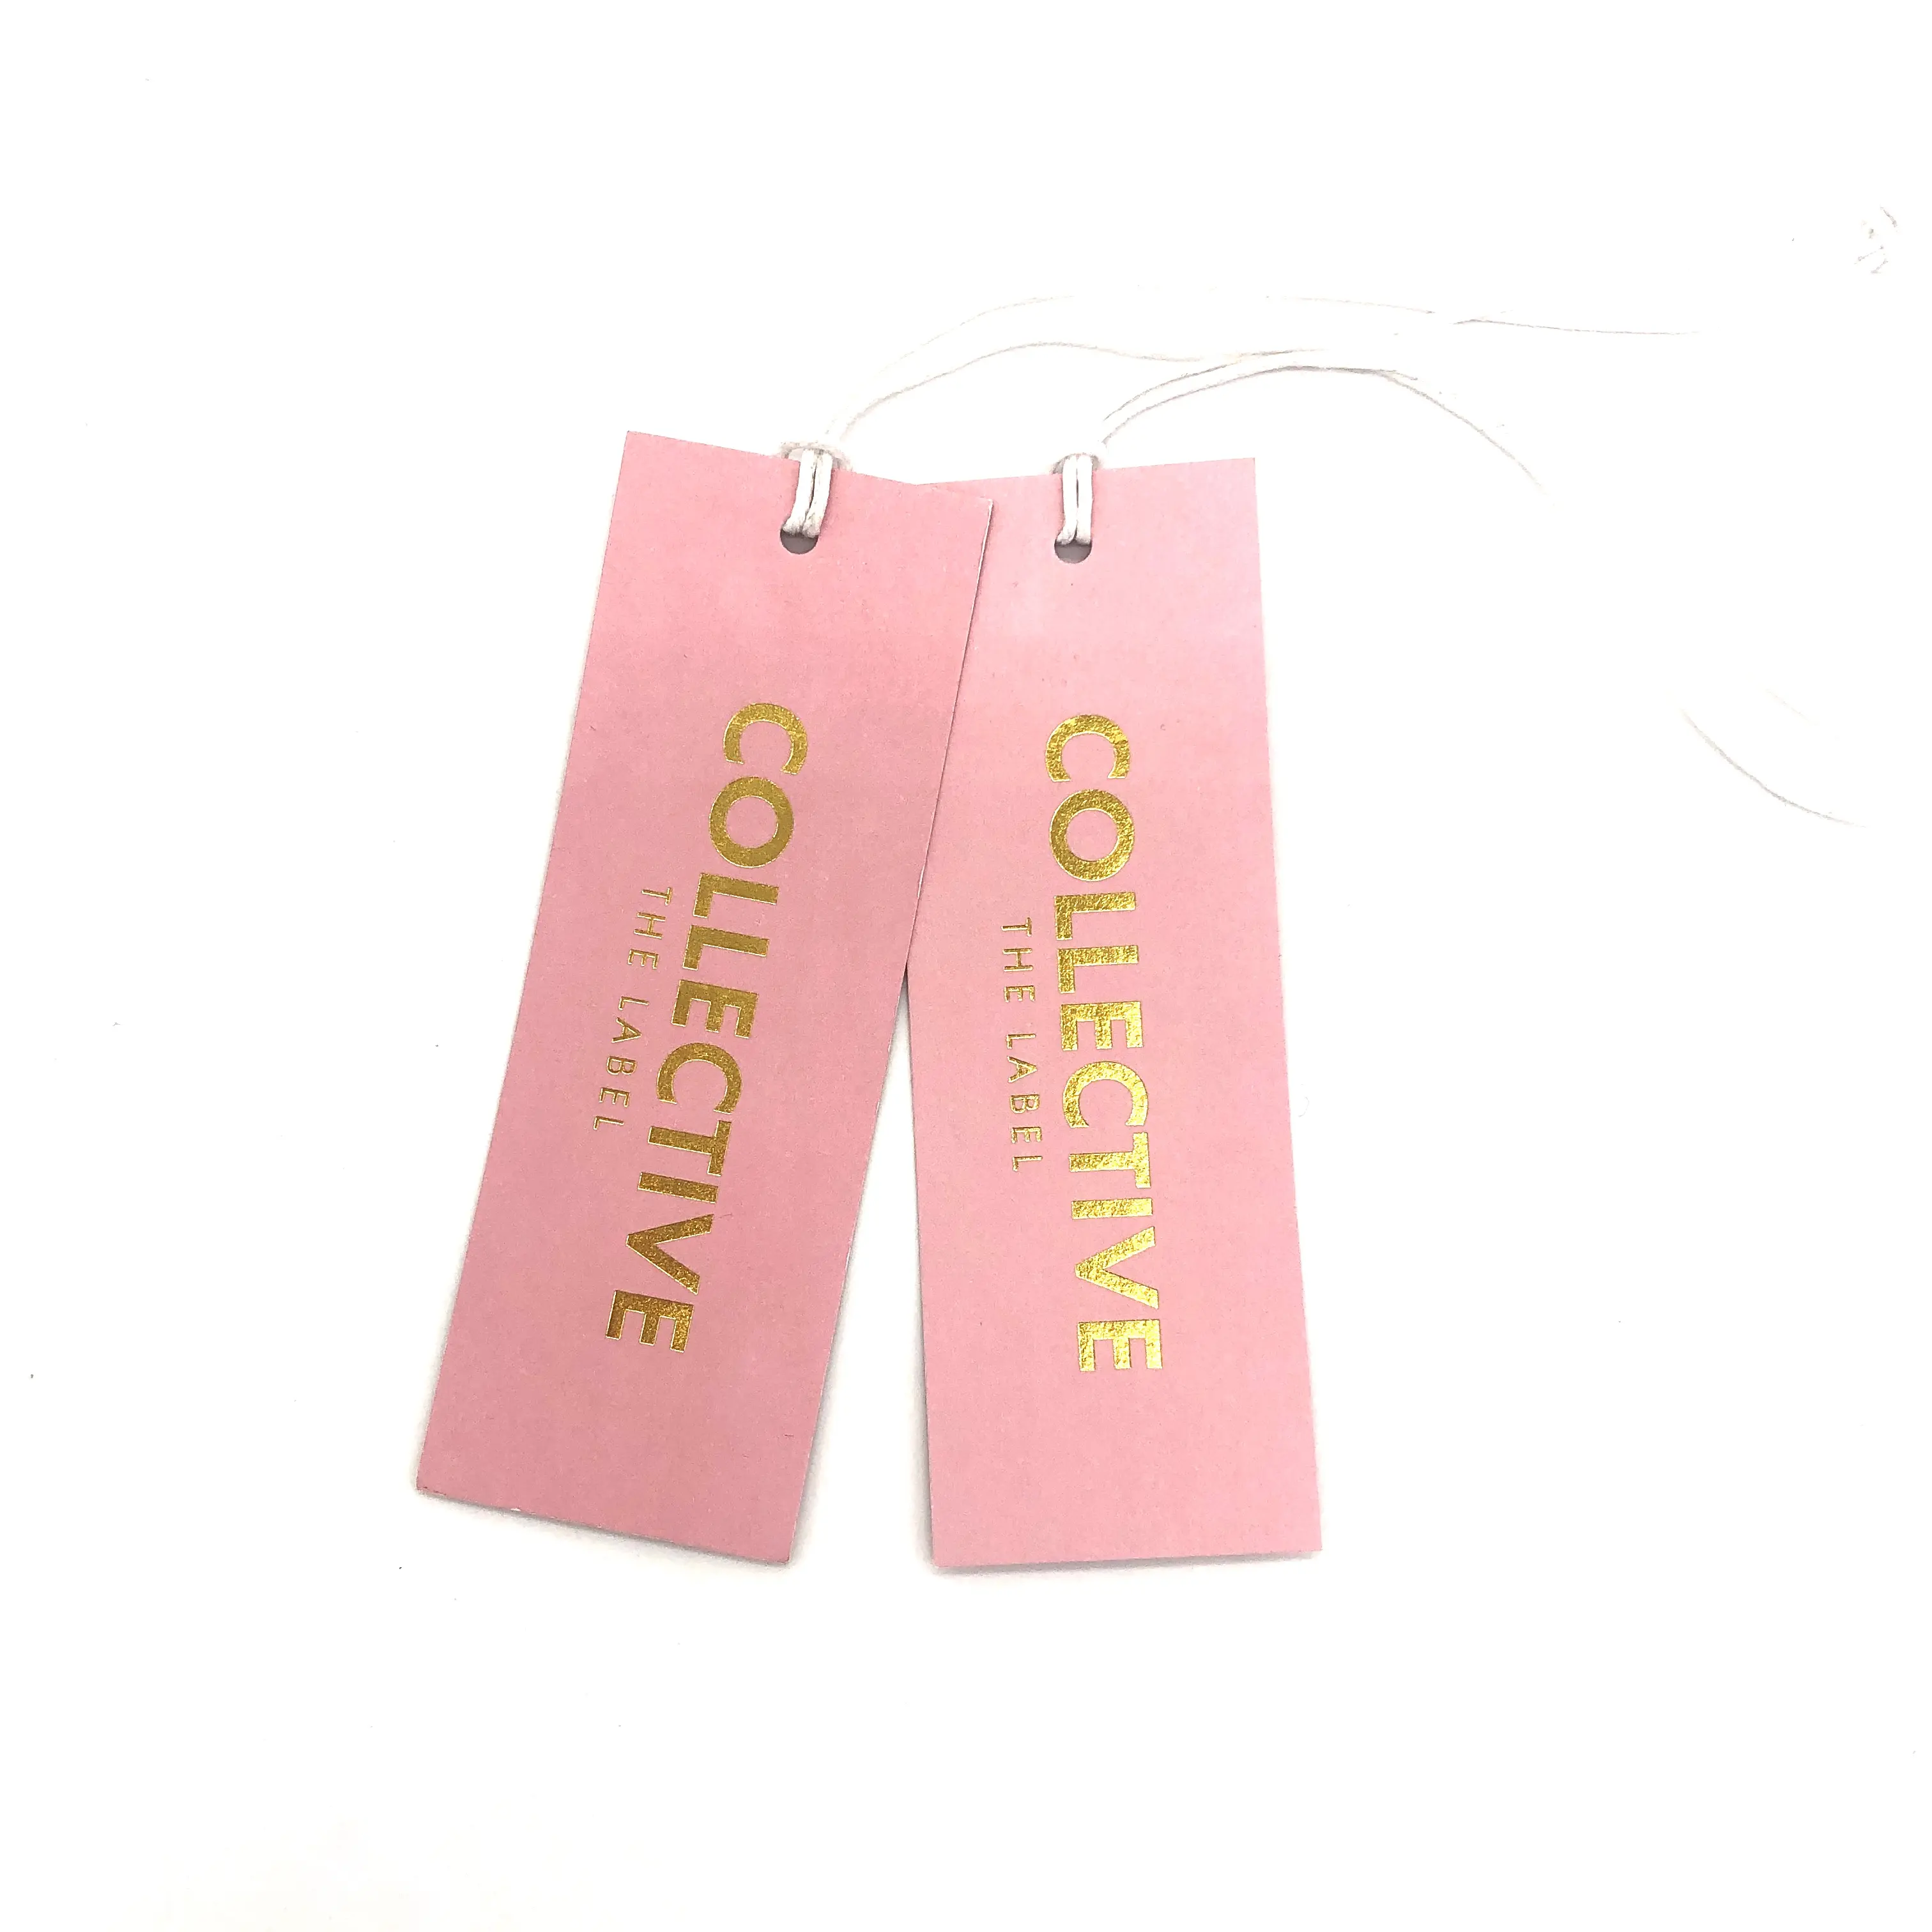 Hangtags personalizada de alta qualidade, carimbo de ouro gravado por logotipo própria para roupas, com etiqueta de pendurar jeans para meninas